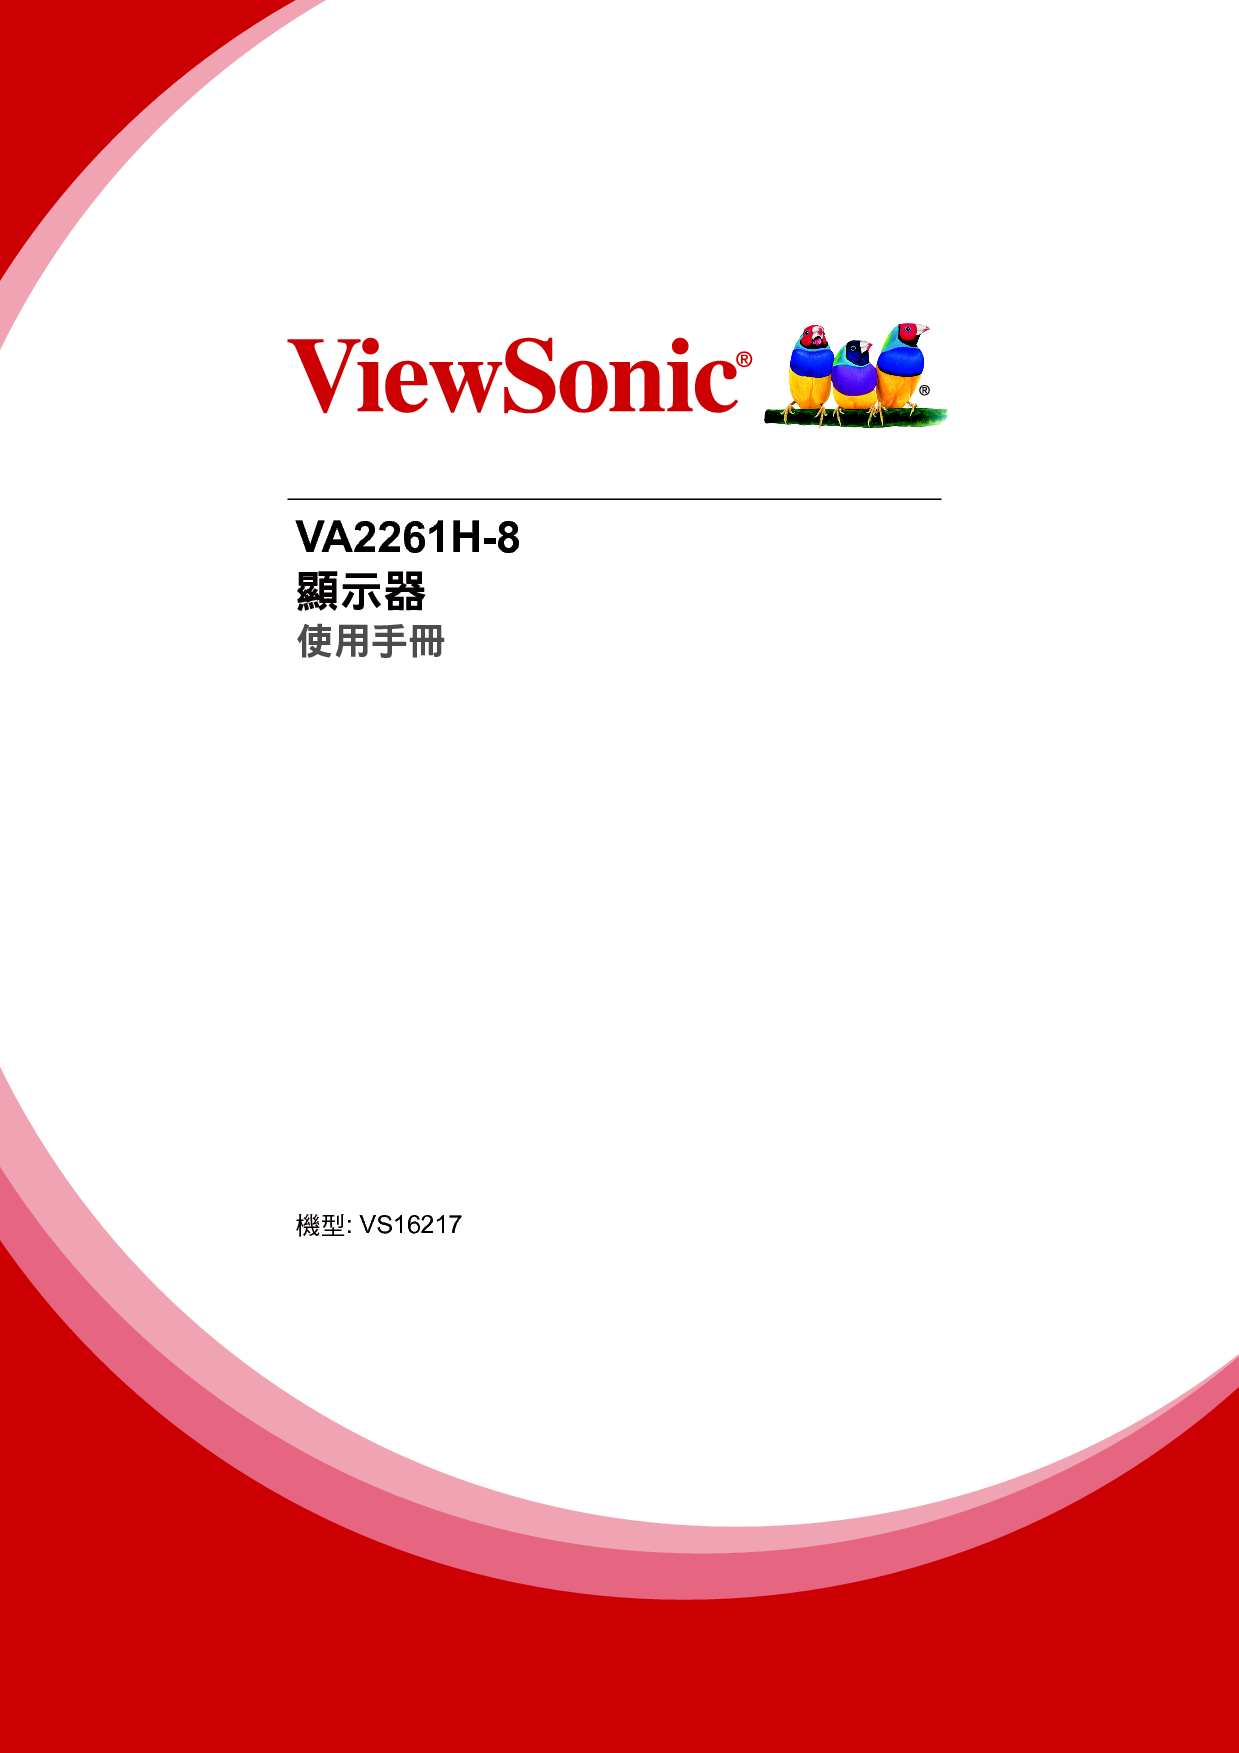 优派 ViewSonic VA2261H-8 繁体 使用手册 封面